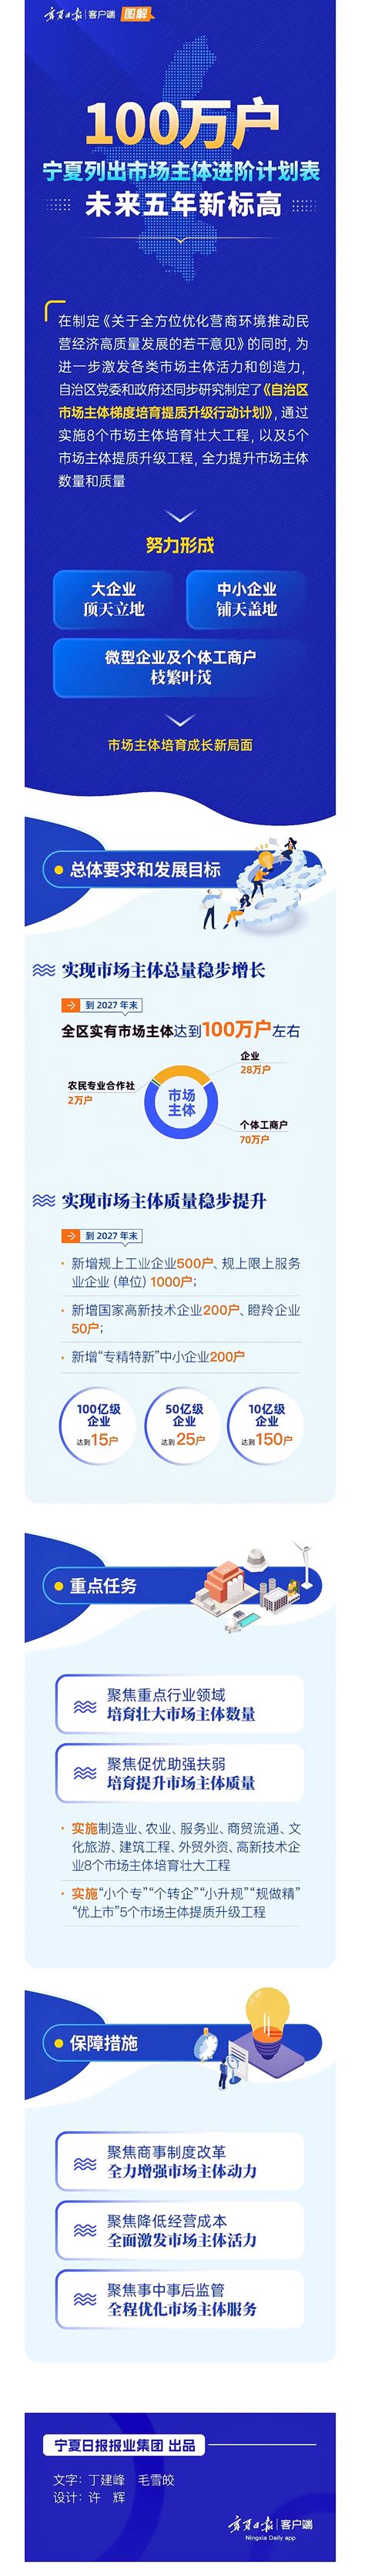 国内首个一体化算力交易调度平台在宁夏上线—新闻—科学网